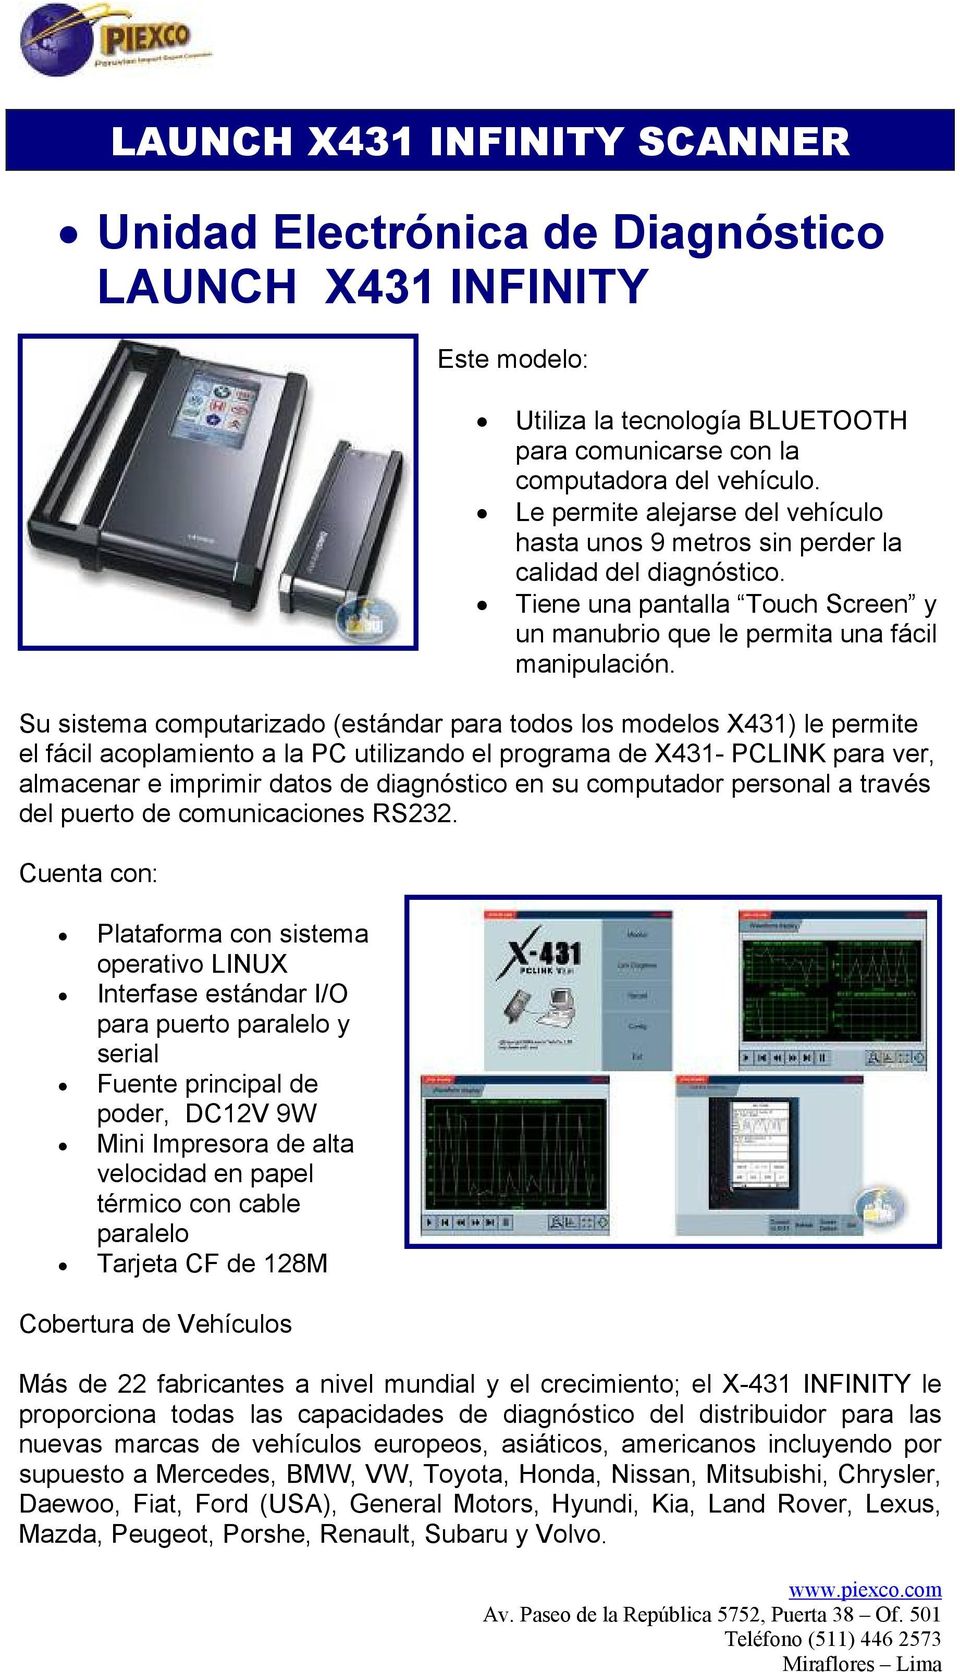 Su sistema computarizado (estándar para todos los modelos X431) le permite el fácil acoplamiento a la PC utilizando el programa de X431- PCLINK para ver, almacenar e imprimir datos de diagnóstico en